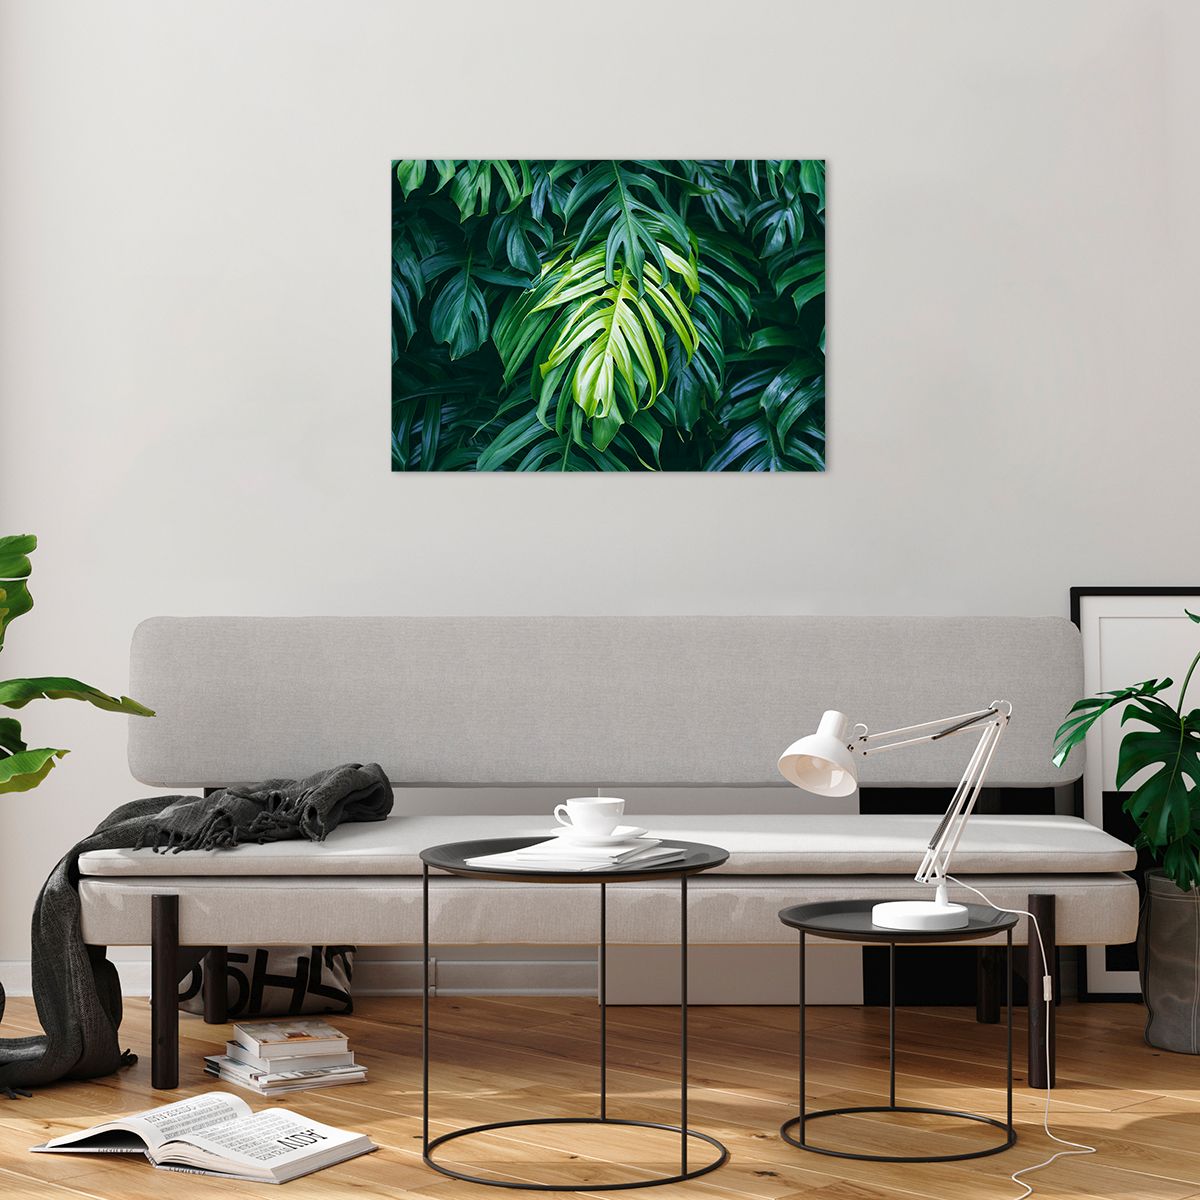 Bilder auf glas Tropische Pflanze, Bilder auf glas Monstera-Blatt, Bilder auf glas Natur, Bilder auf glas Grünes Blatt, Bilder auf glas Hawaii